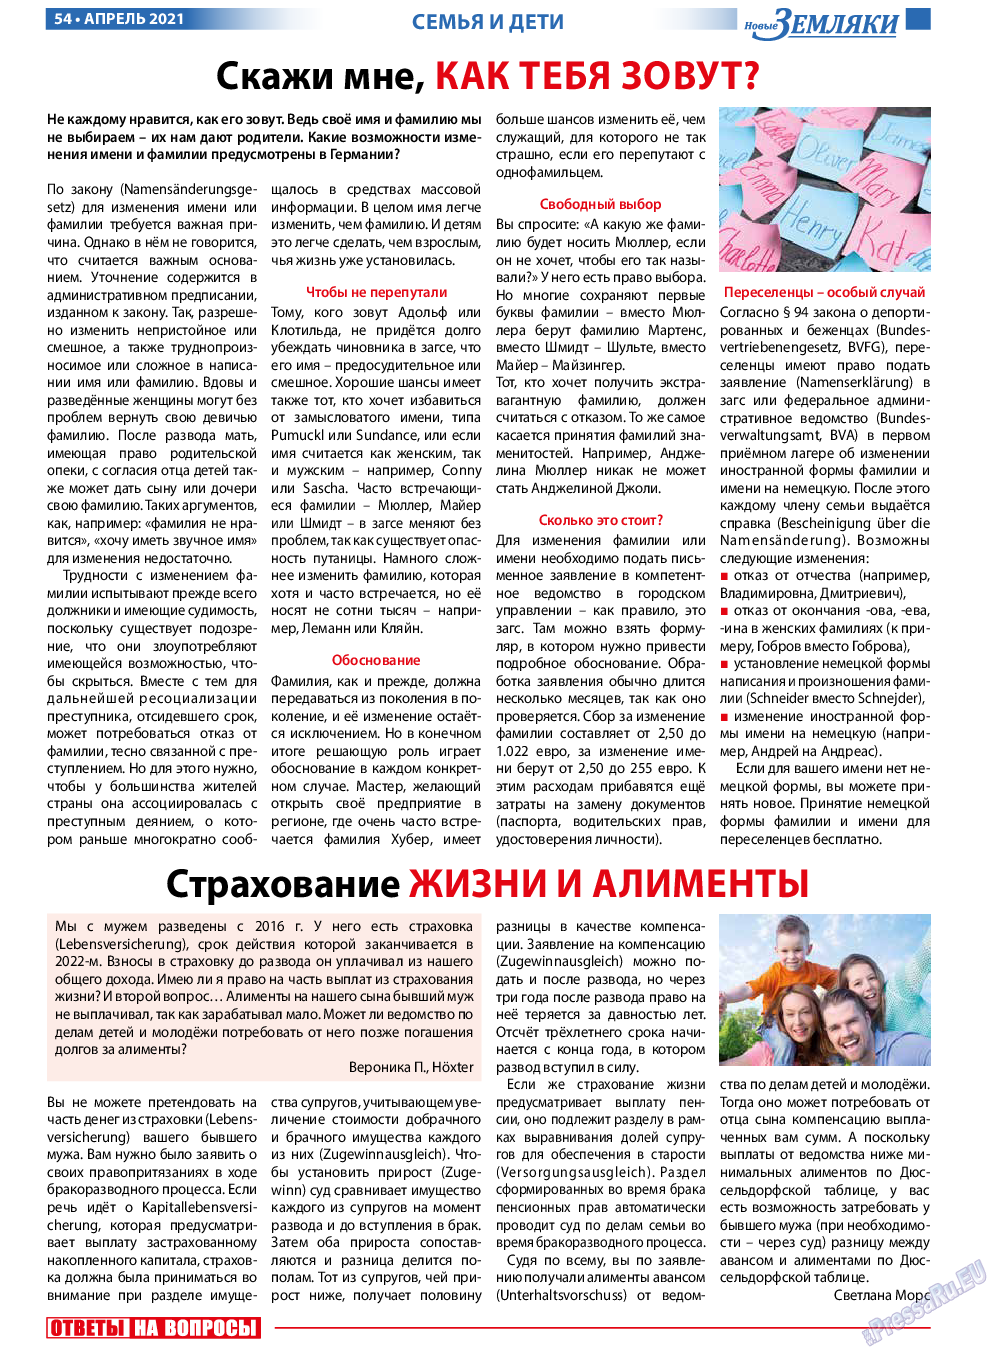 Новые Земляки, газета. 2021 №4 стр.54